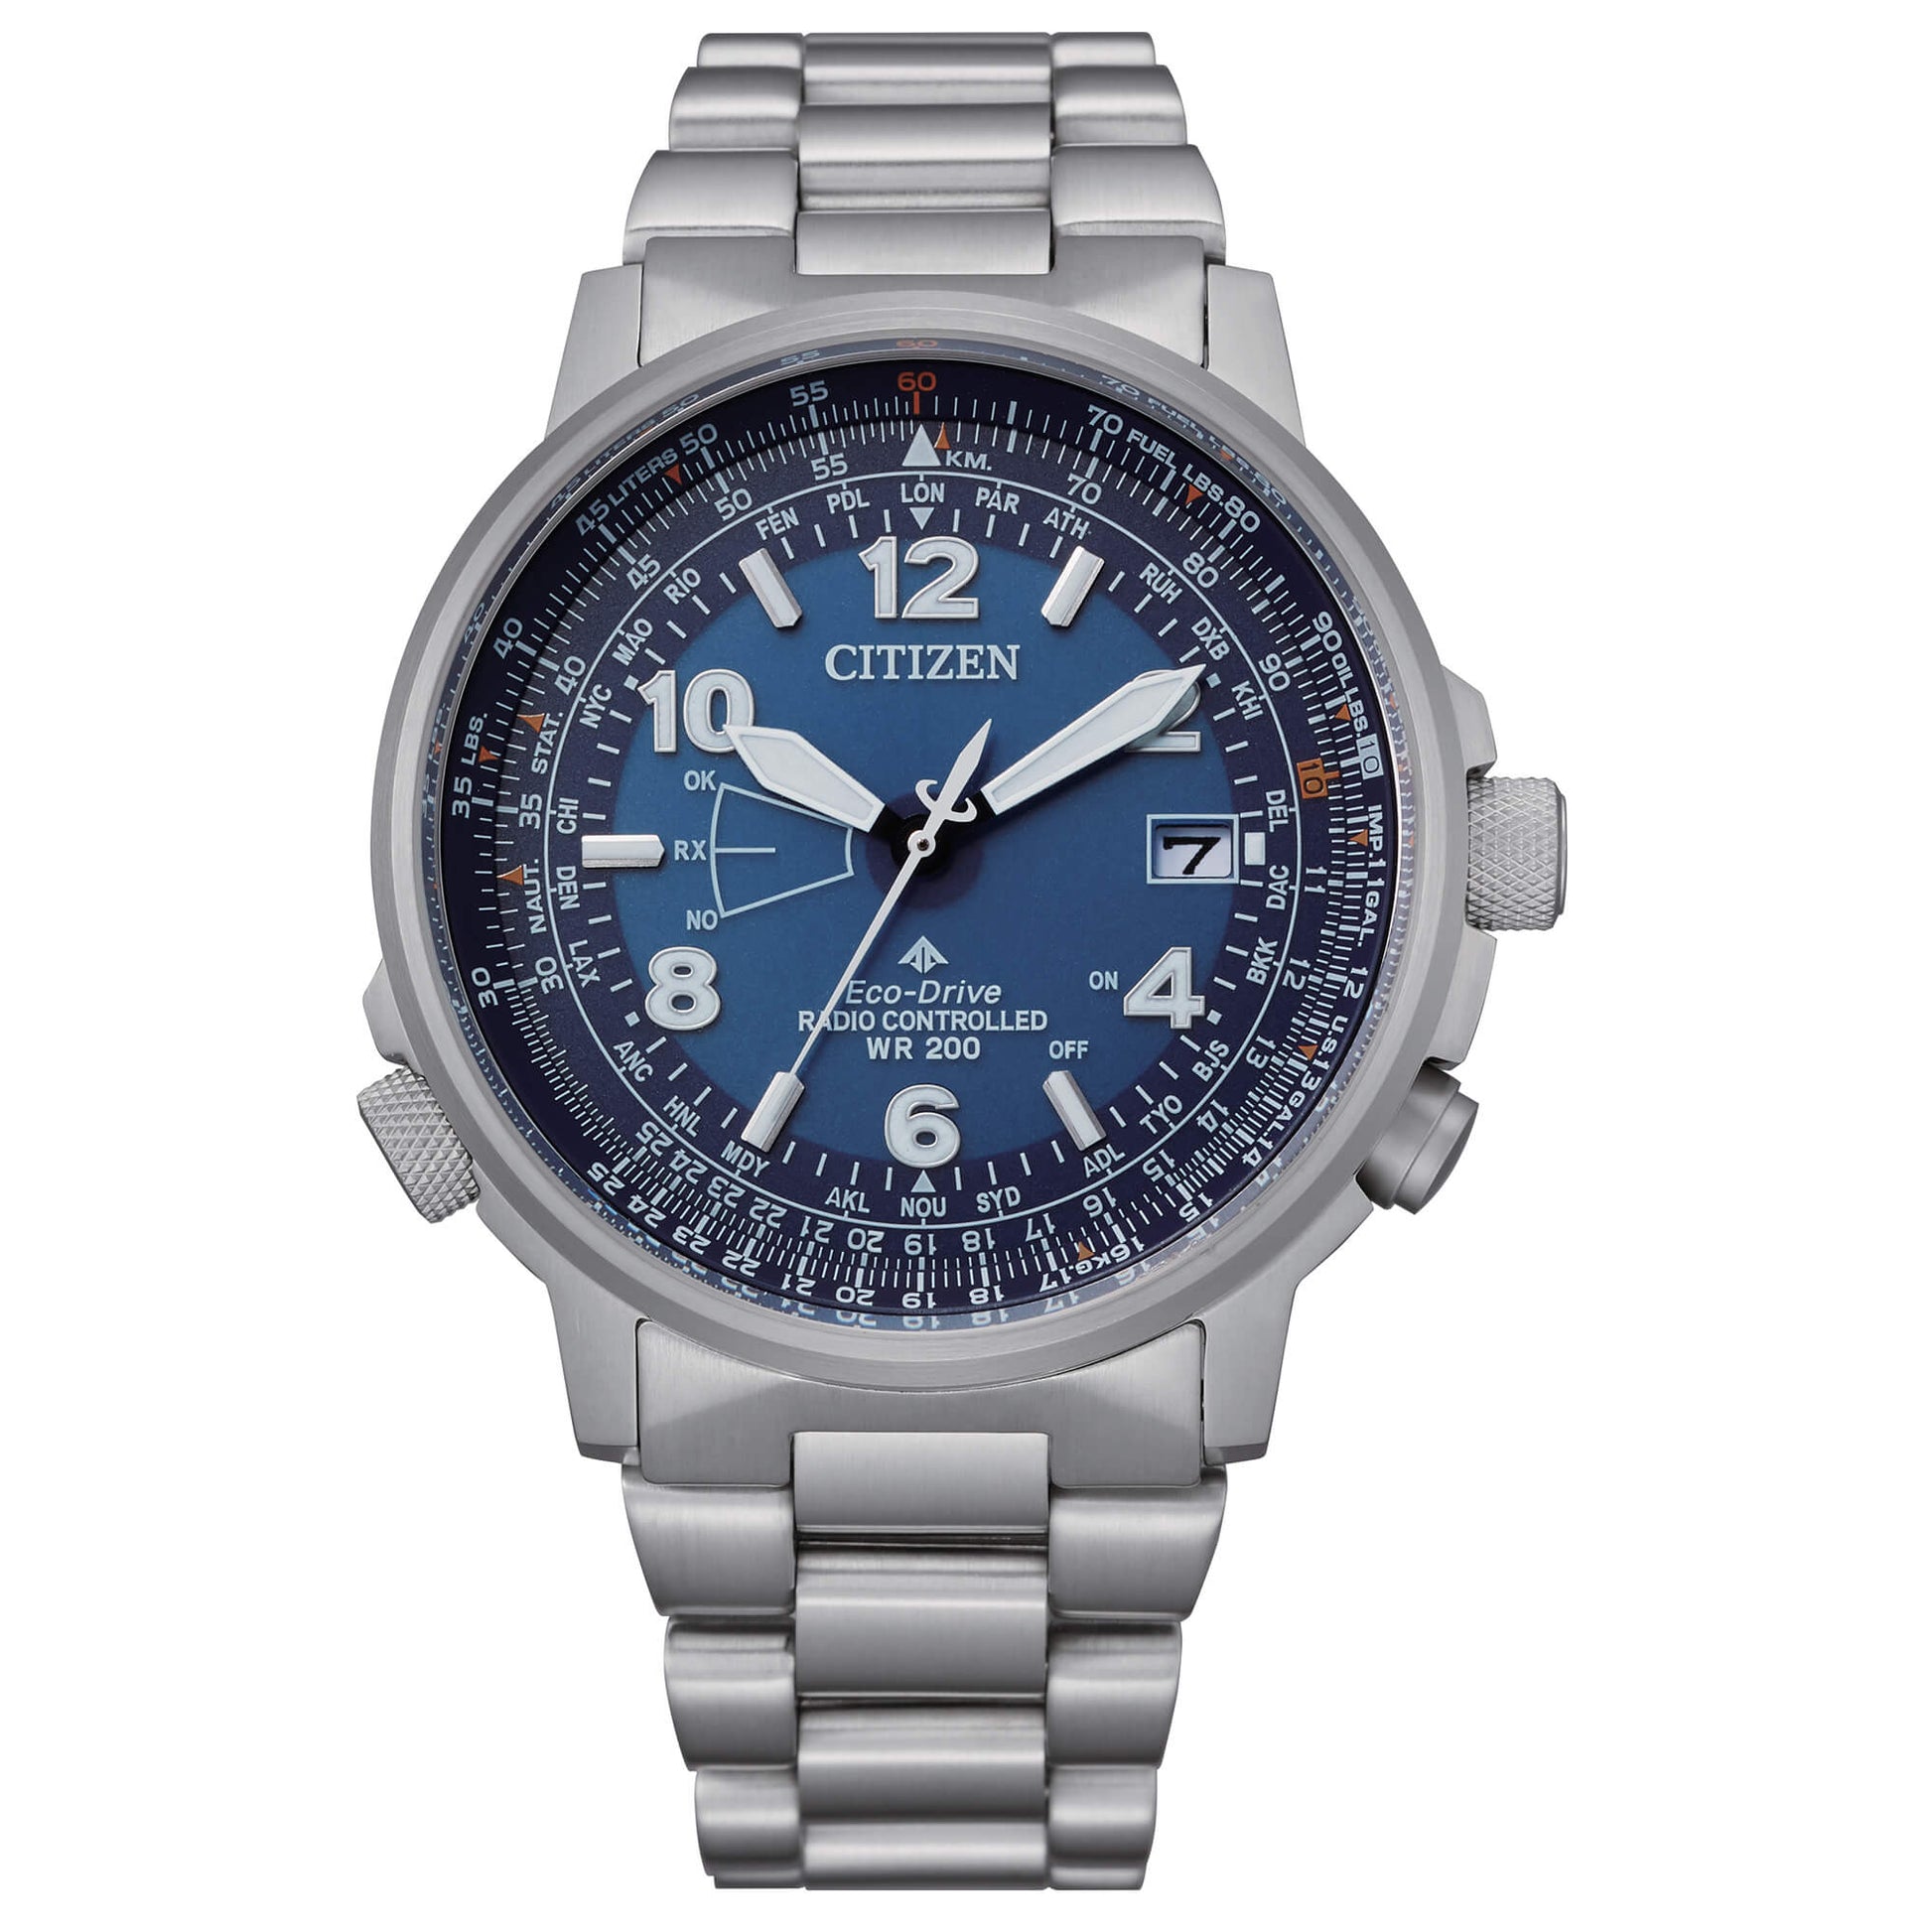 Citizen Pilot Acciaio orologio da uomo cronografo Eco Drive Radiocontrollato con cassa e cinturino in acciaio e quadrante blu - Codice orologio: CB0240-88L